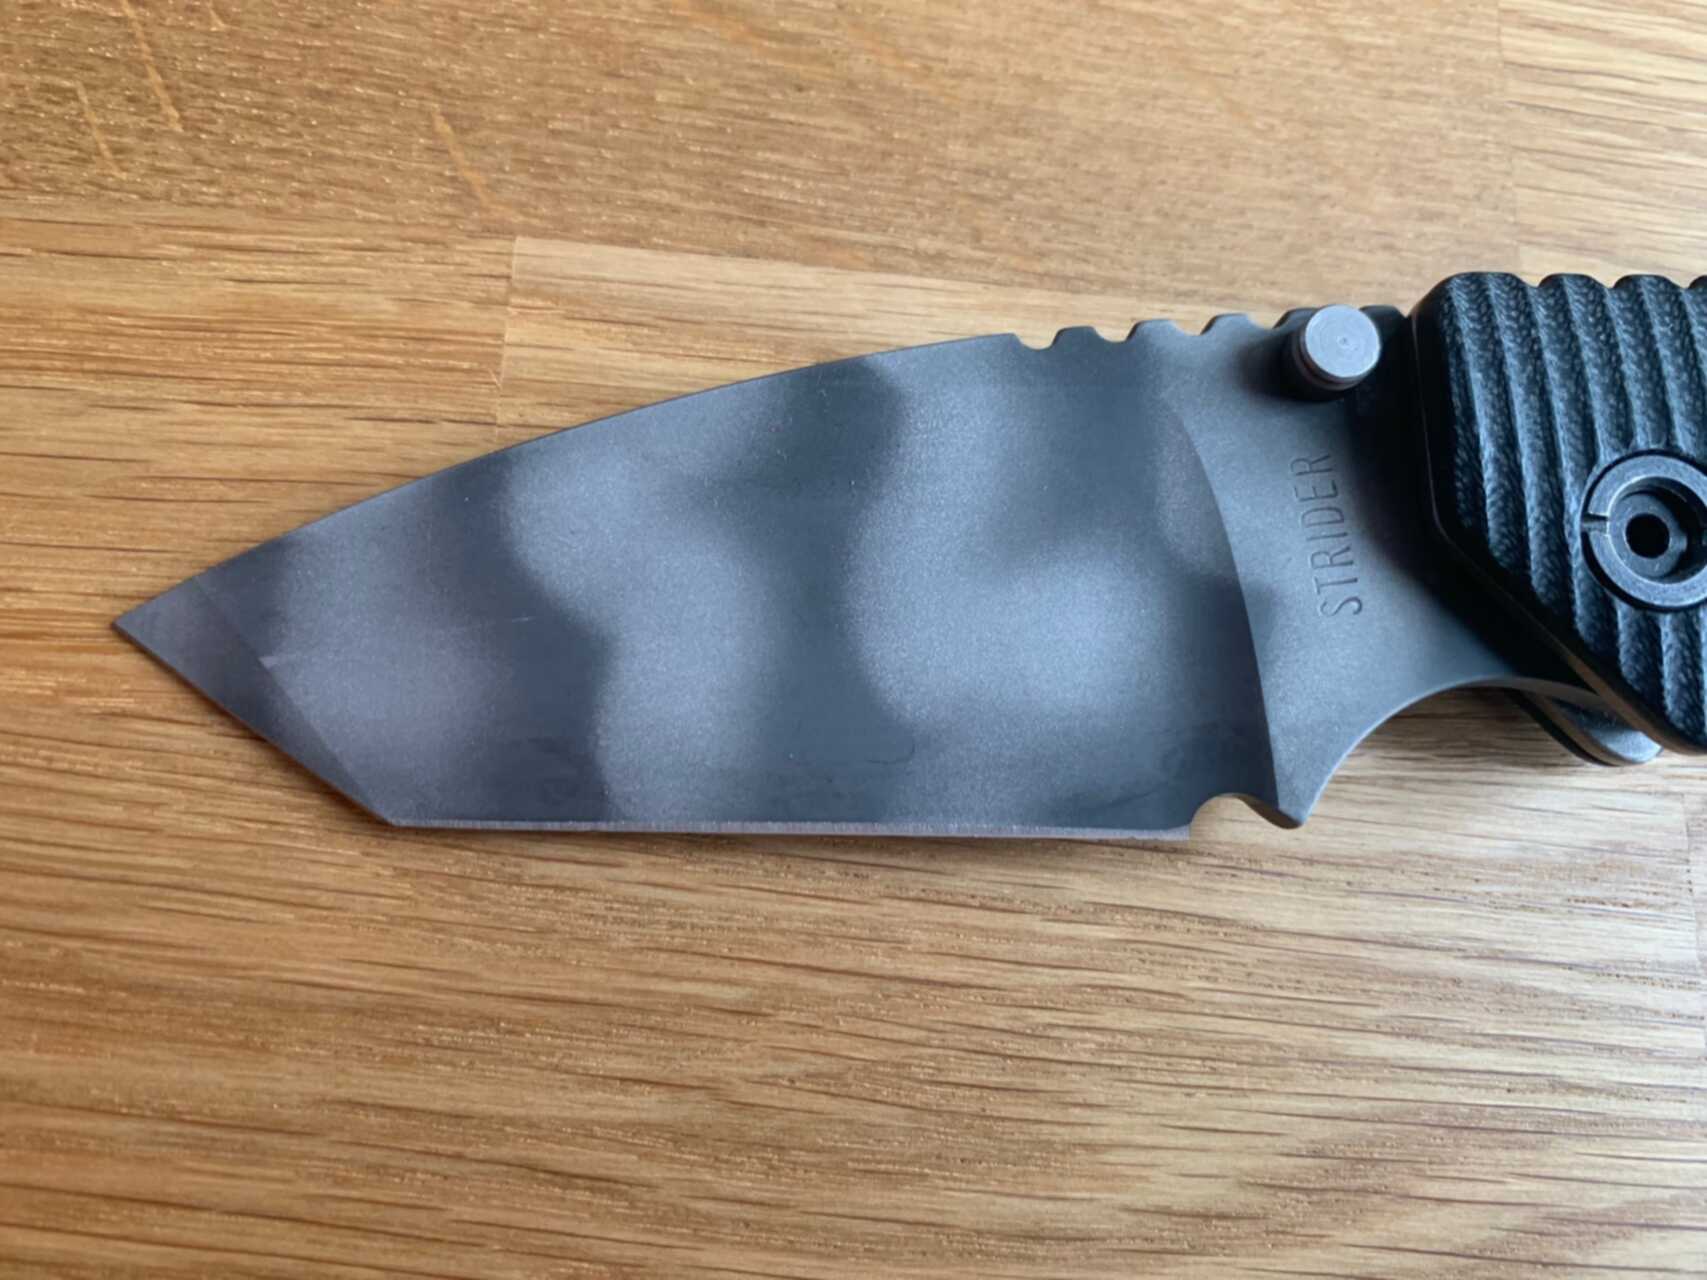 Mechanics Lab ножи. Ивент с танто из тигр. The Mini Knife for Laboratory for Leaf.